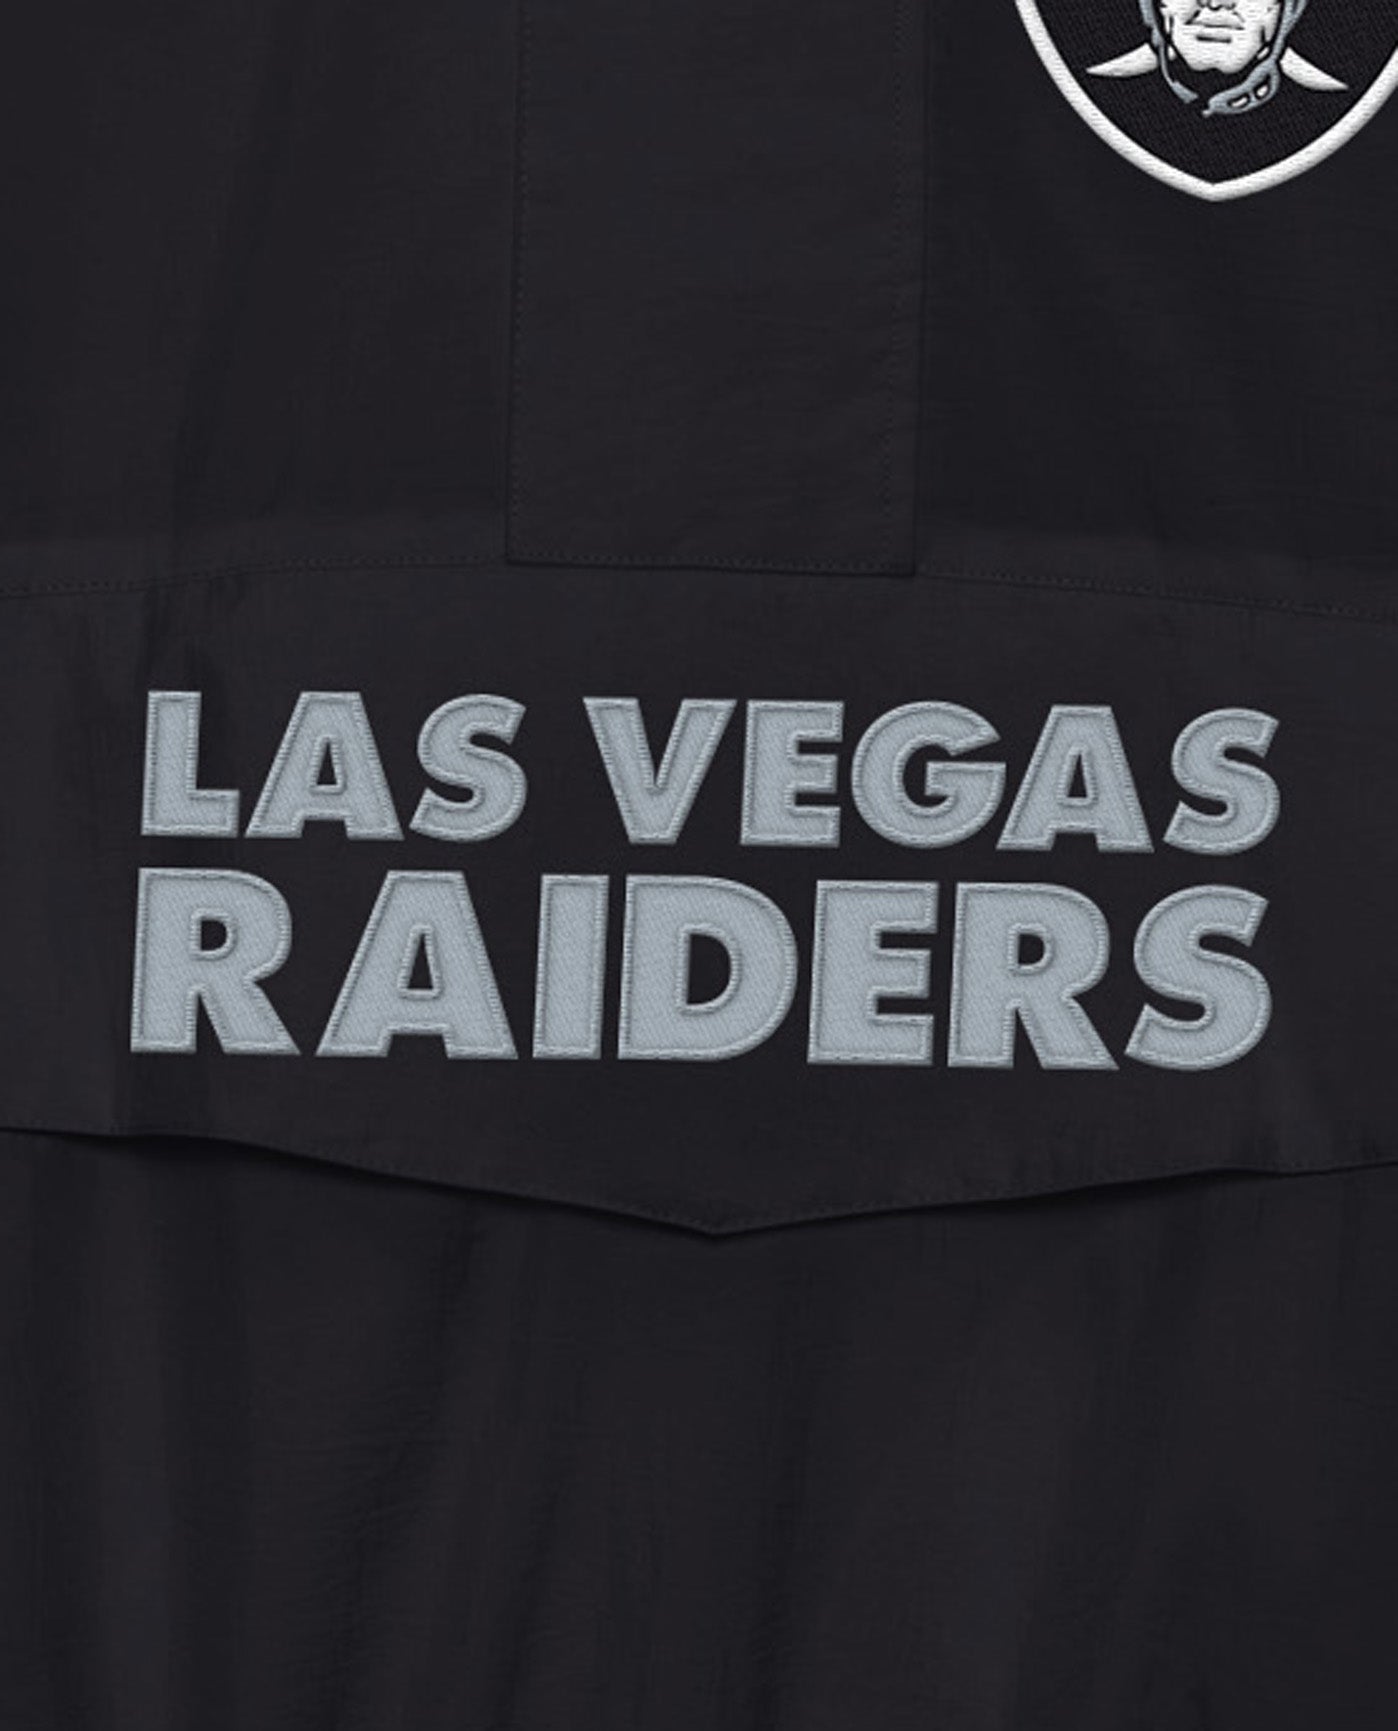 New era NFL Windbreaker Las Vegas Raiders Jacket Black